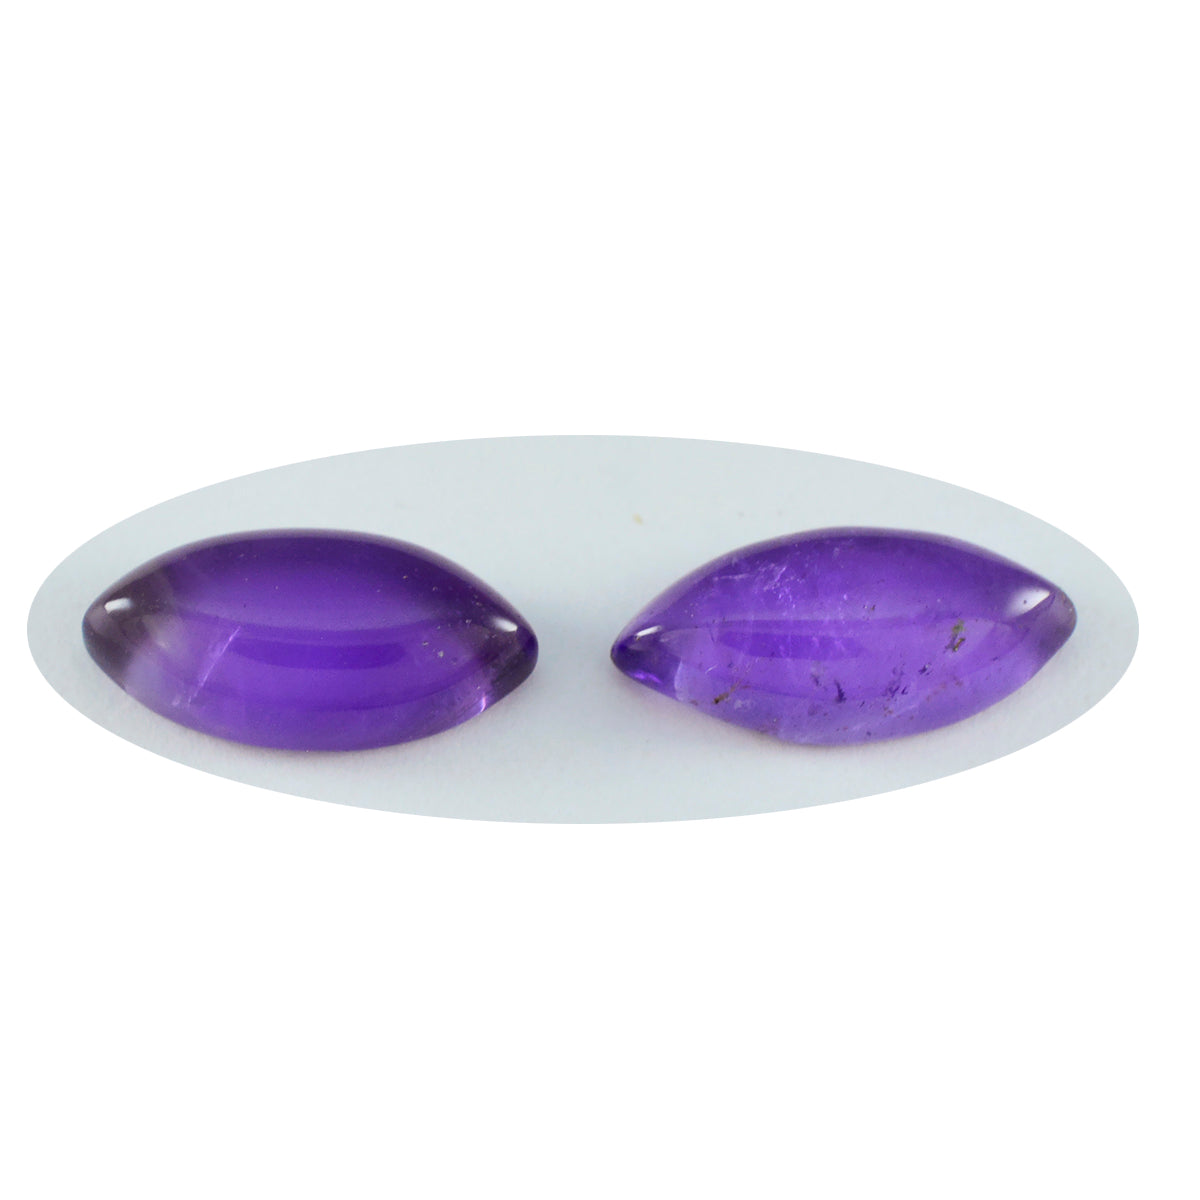 Riyogems 1PC Purple Amethyst Cabochon 10x20 mm Marquise Shape A+ Quality Loose Gemstone